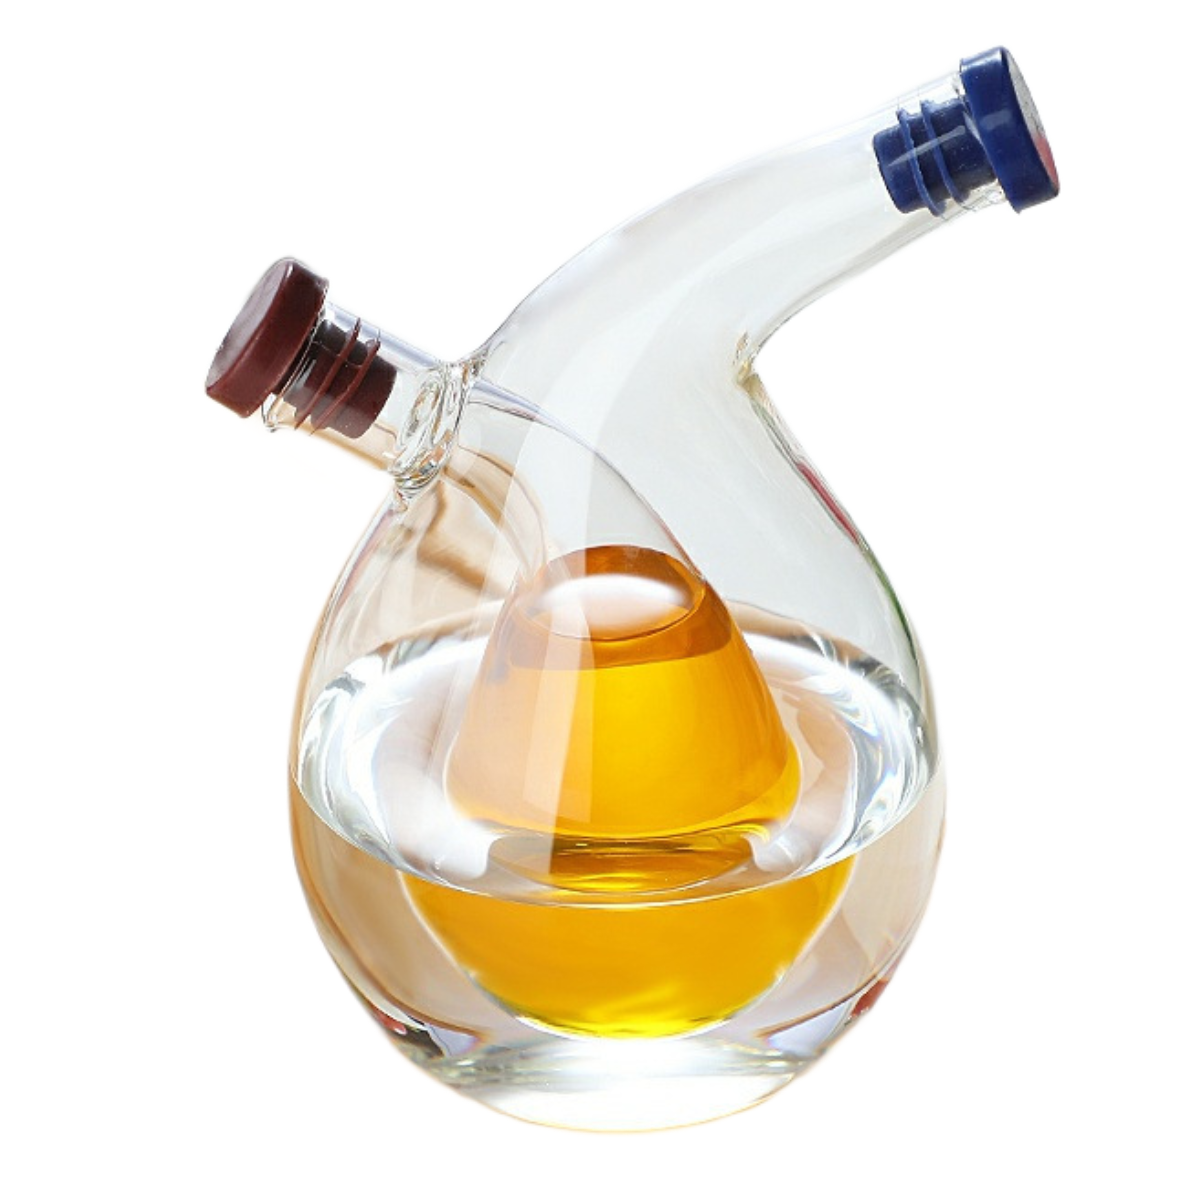 UWOT Küche kreative Haushalt Glas Gewürzflasche Küche Gewürzflasche Mehrzweck-Ölkännchen Öltopf liefert versiegelte